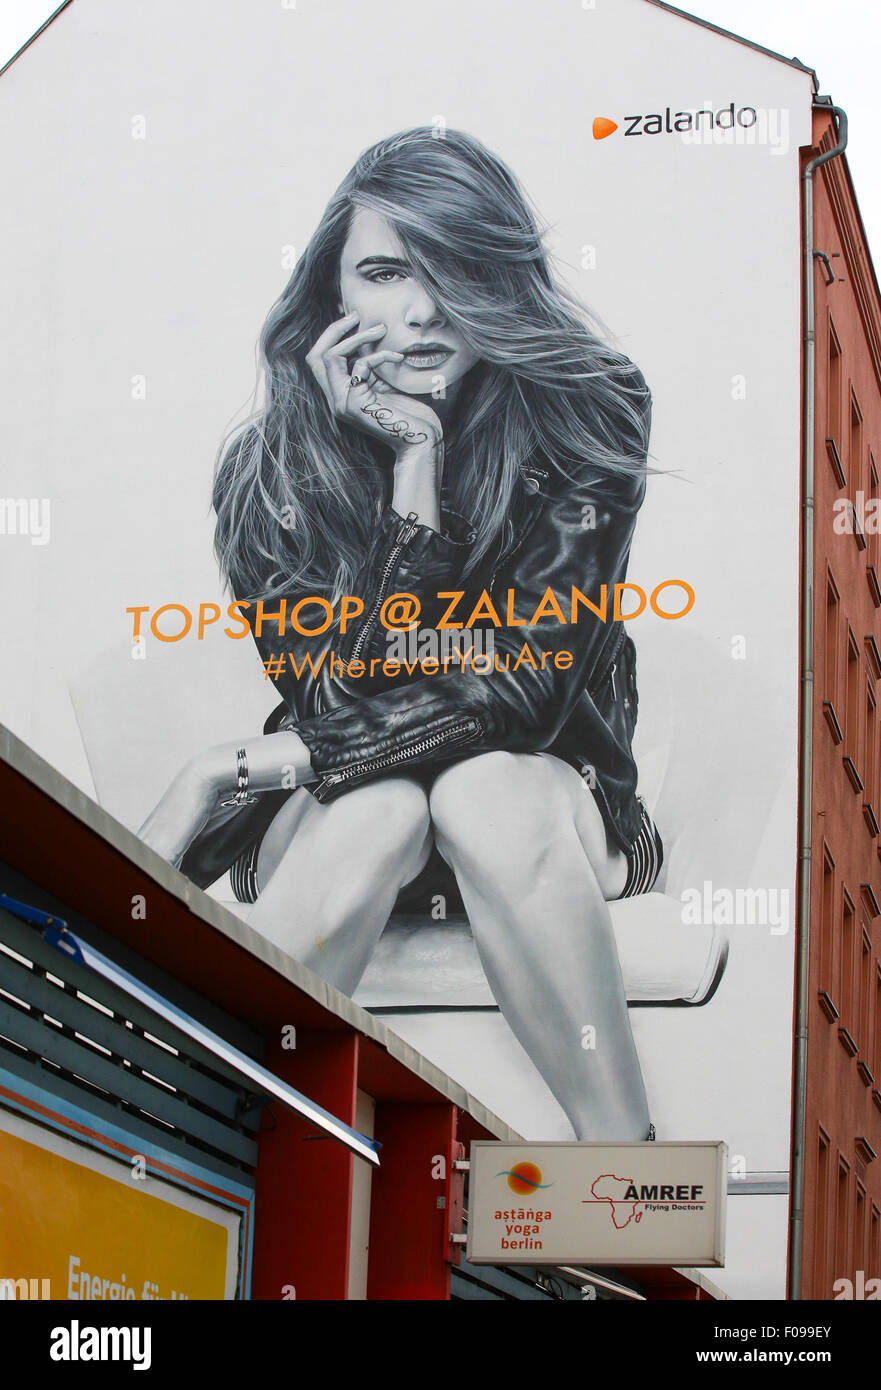 Cara Delevingne wall mural to celebrate Topshop at Zalando at Stock Photo -  Alamy